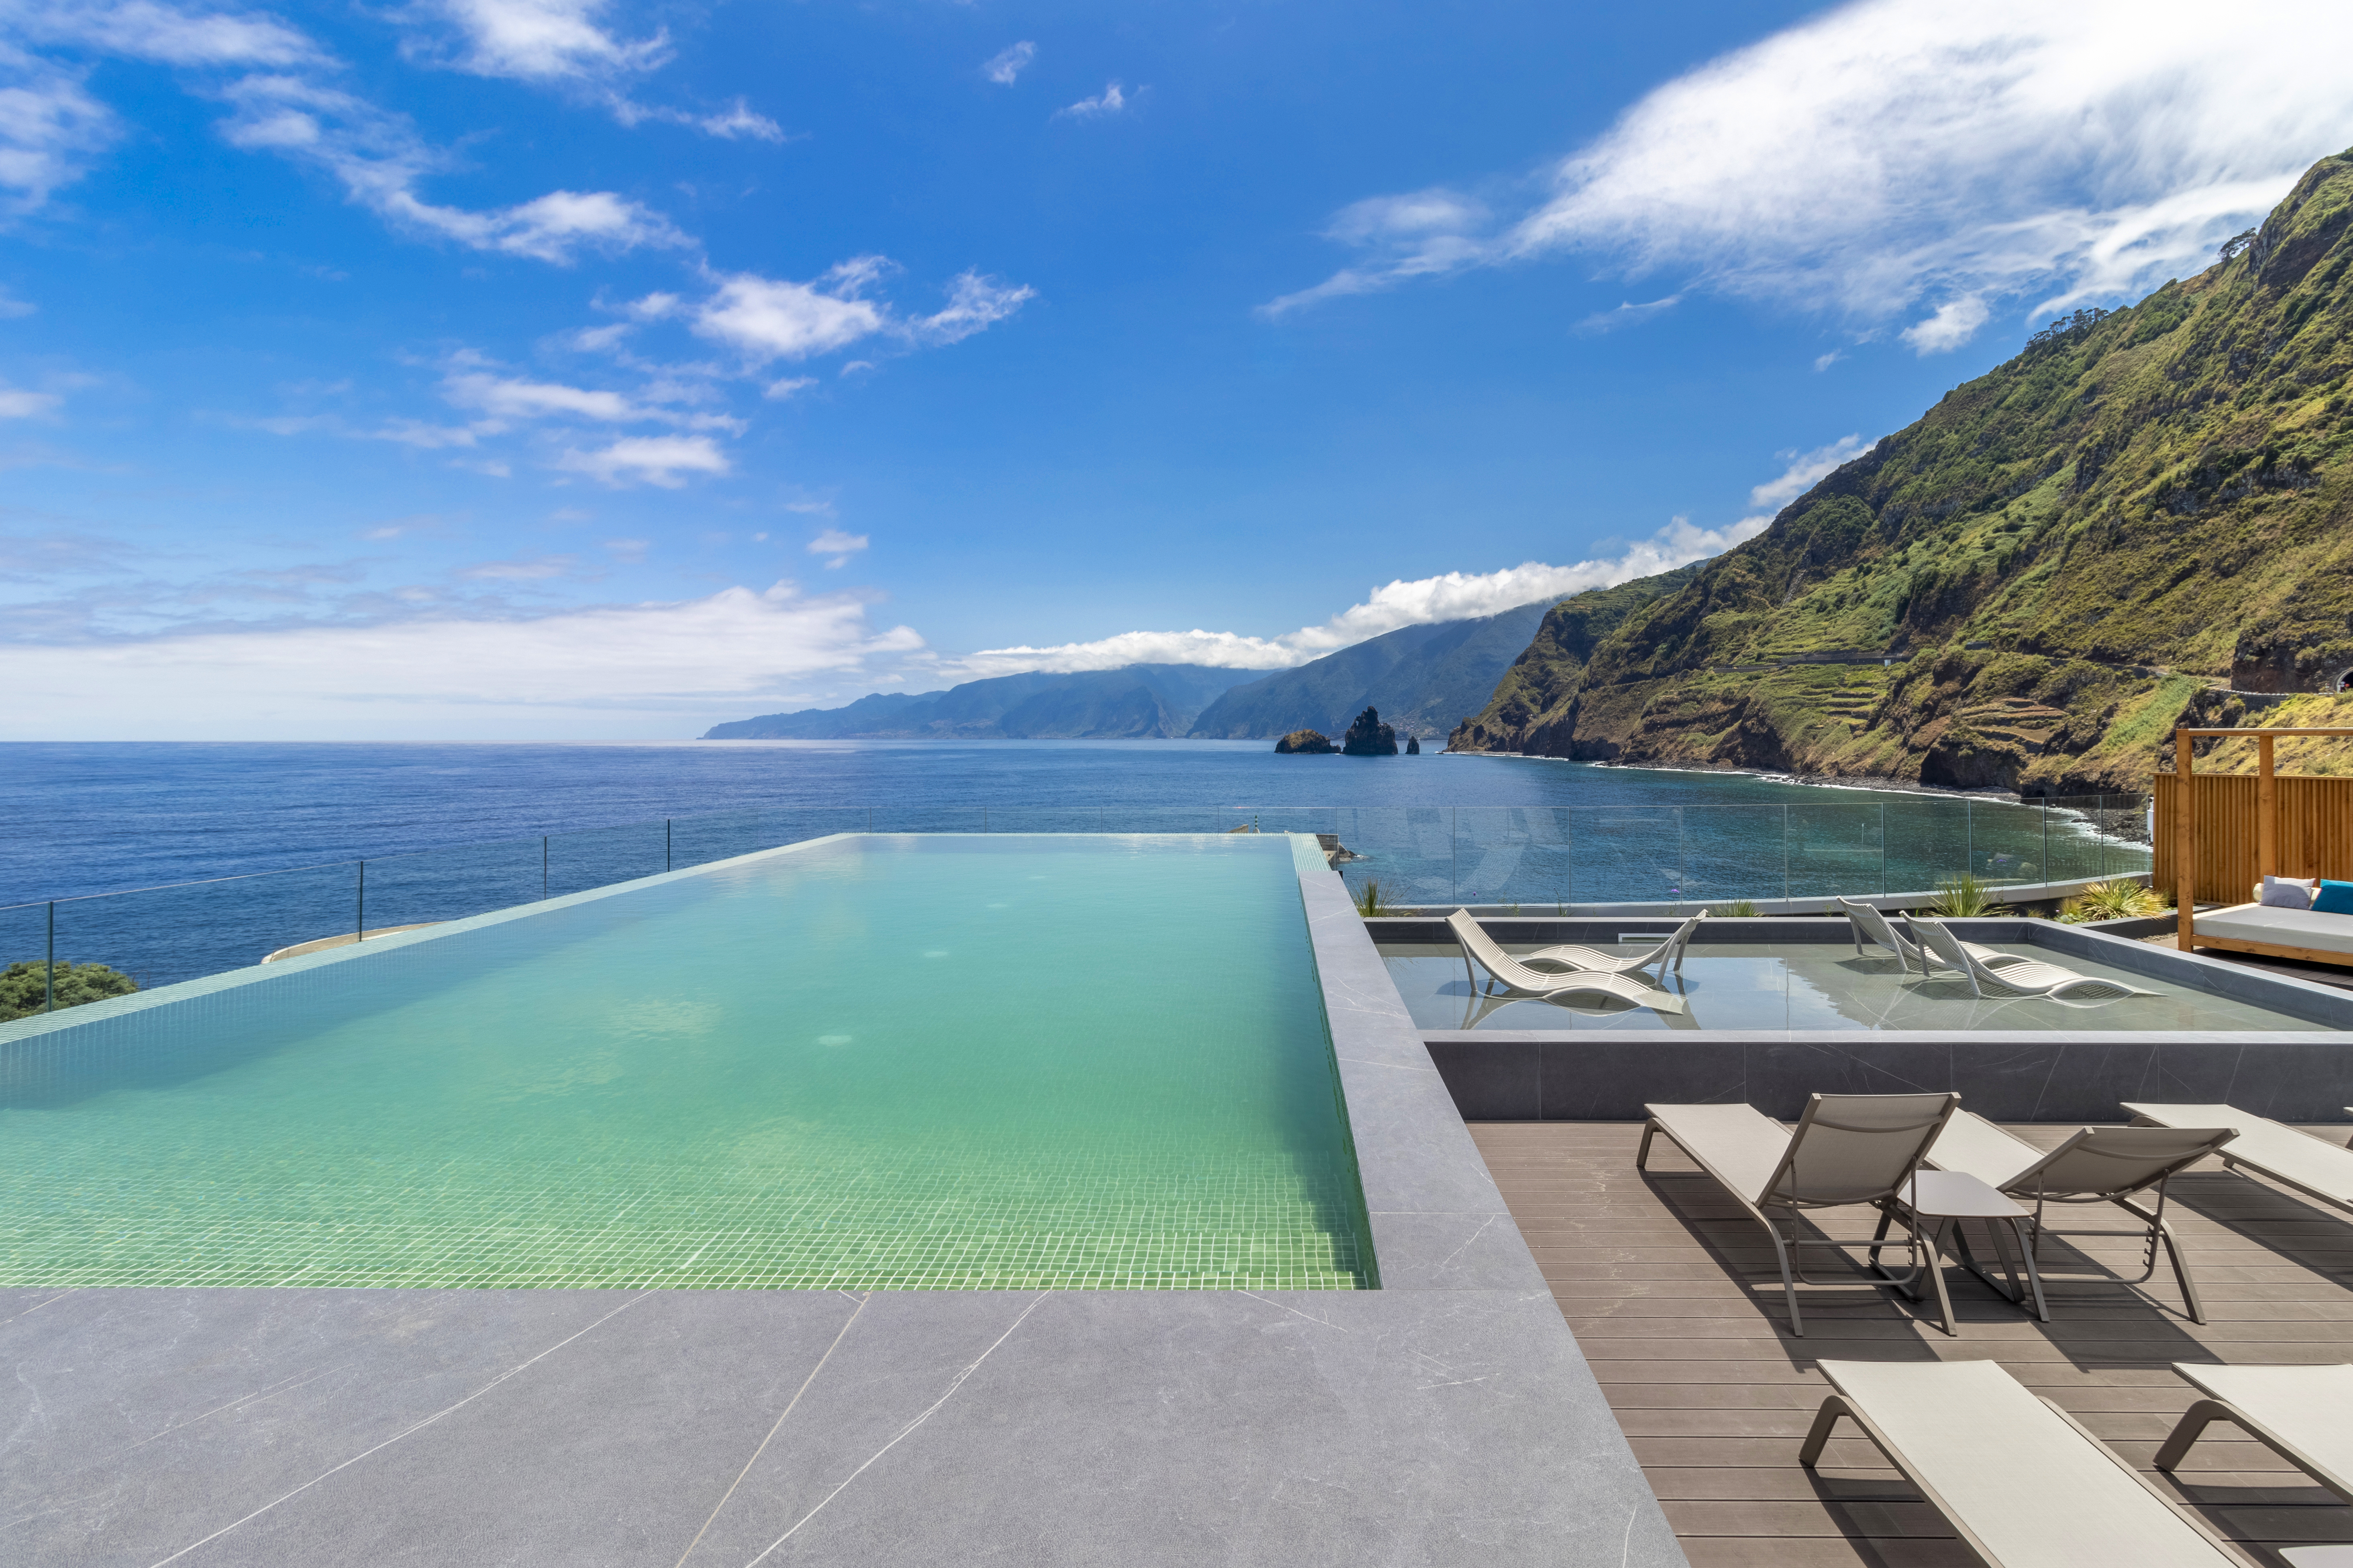 Infinity Pool At Aqua Natura Bay Hotel, Madeira